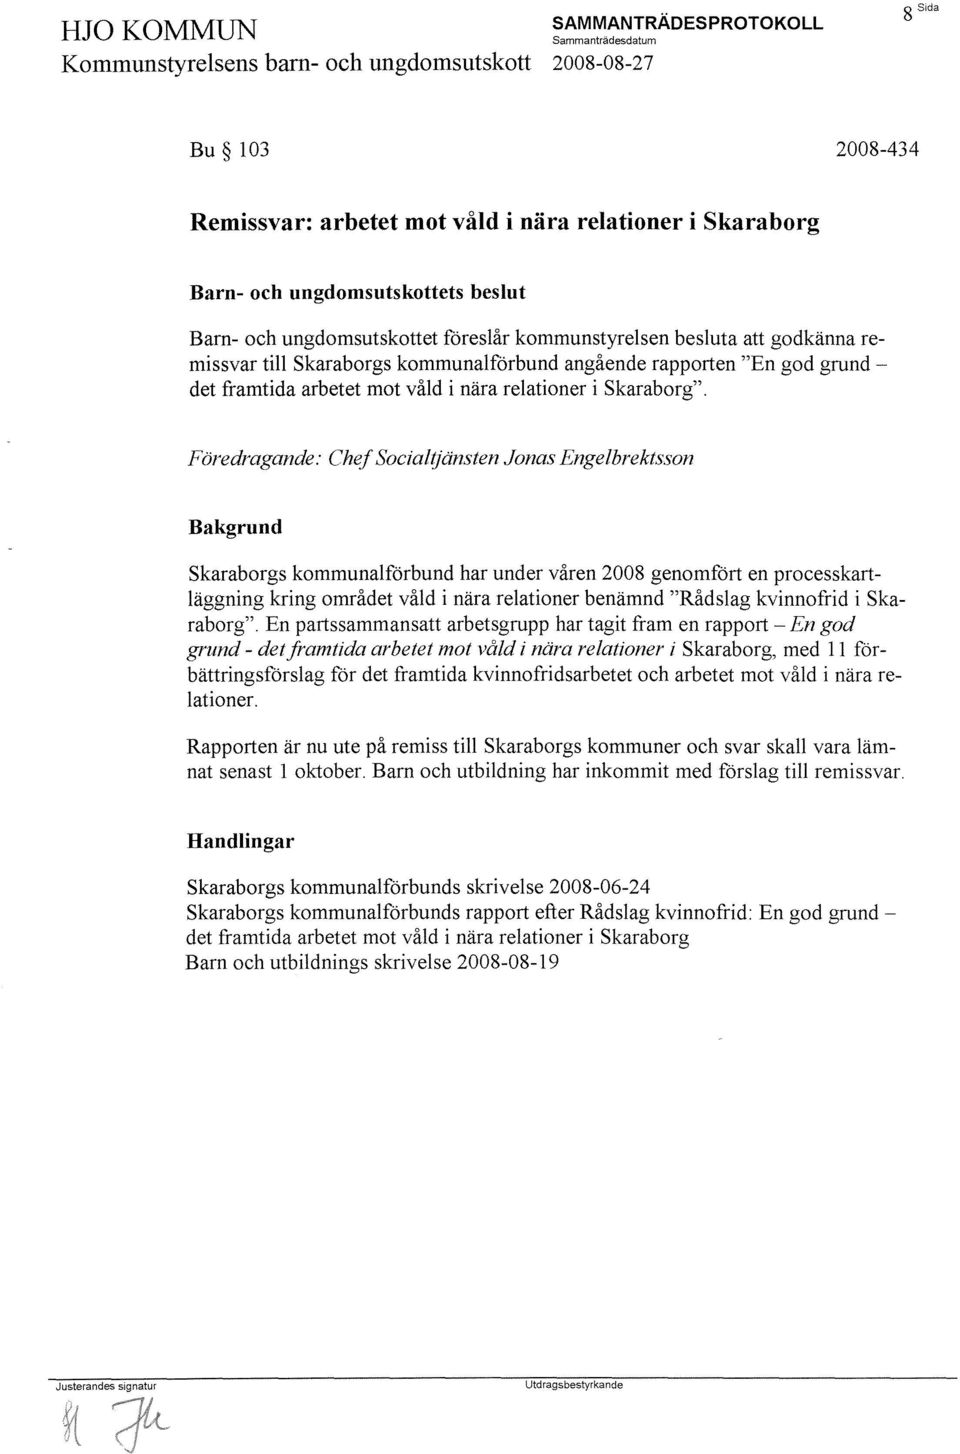 Föredragande: Chef Socialljänsten Jonas Engelbrektsson Skaraborgs kommunalförbund har under våren 2008 genomfört en processkartläggning kring området våld i nära relationer benämnd "Rådslag